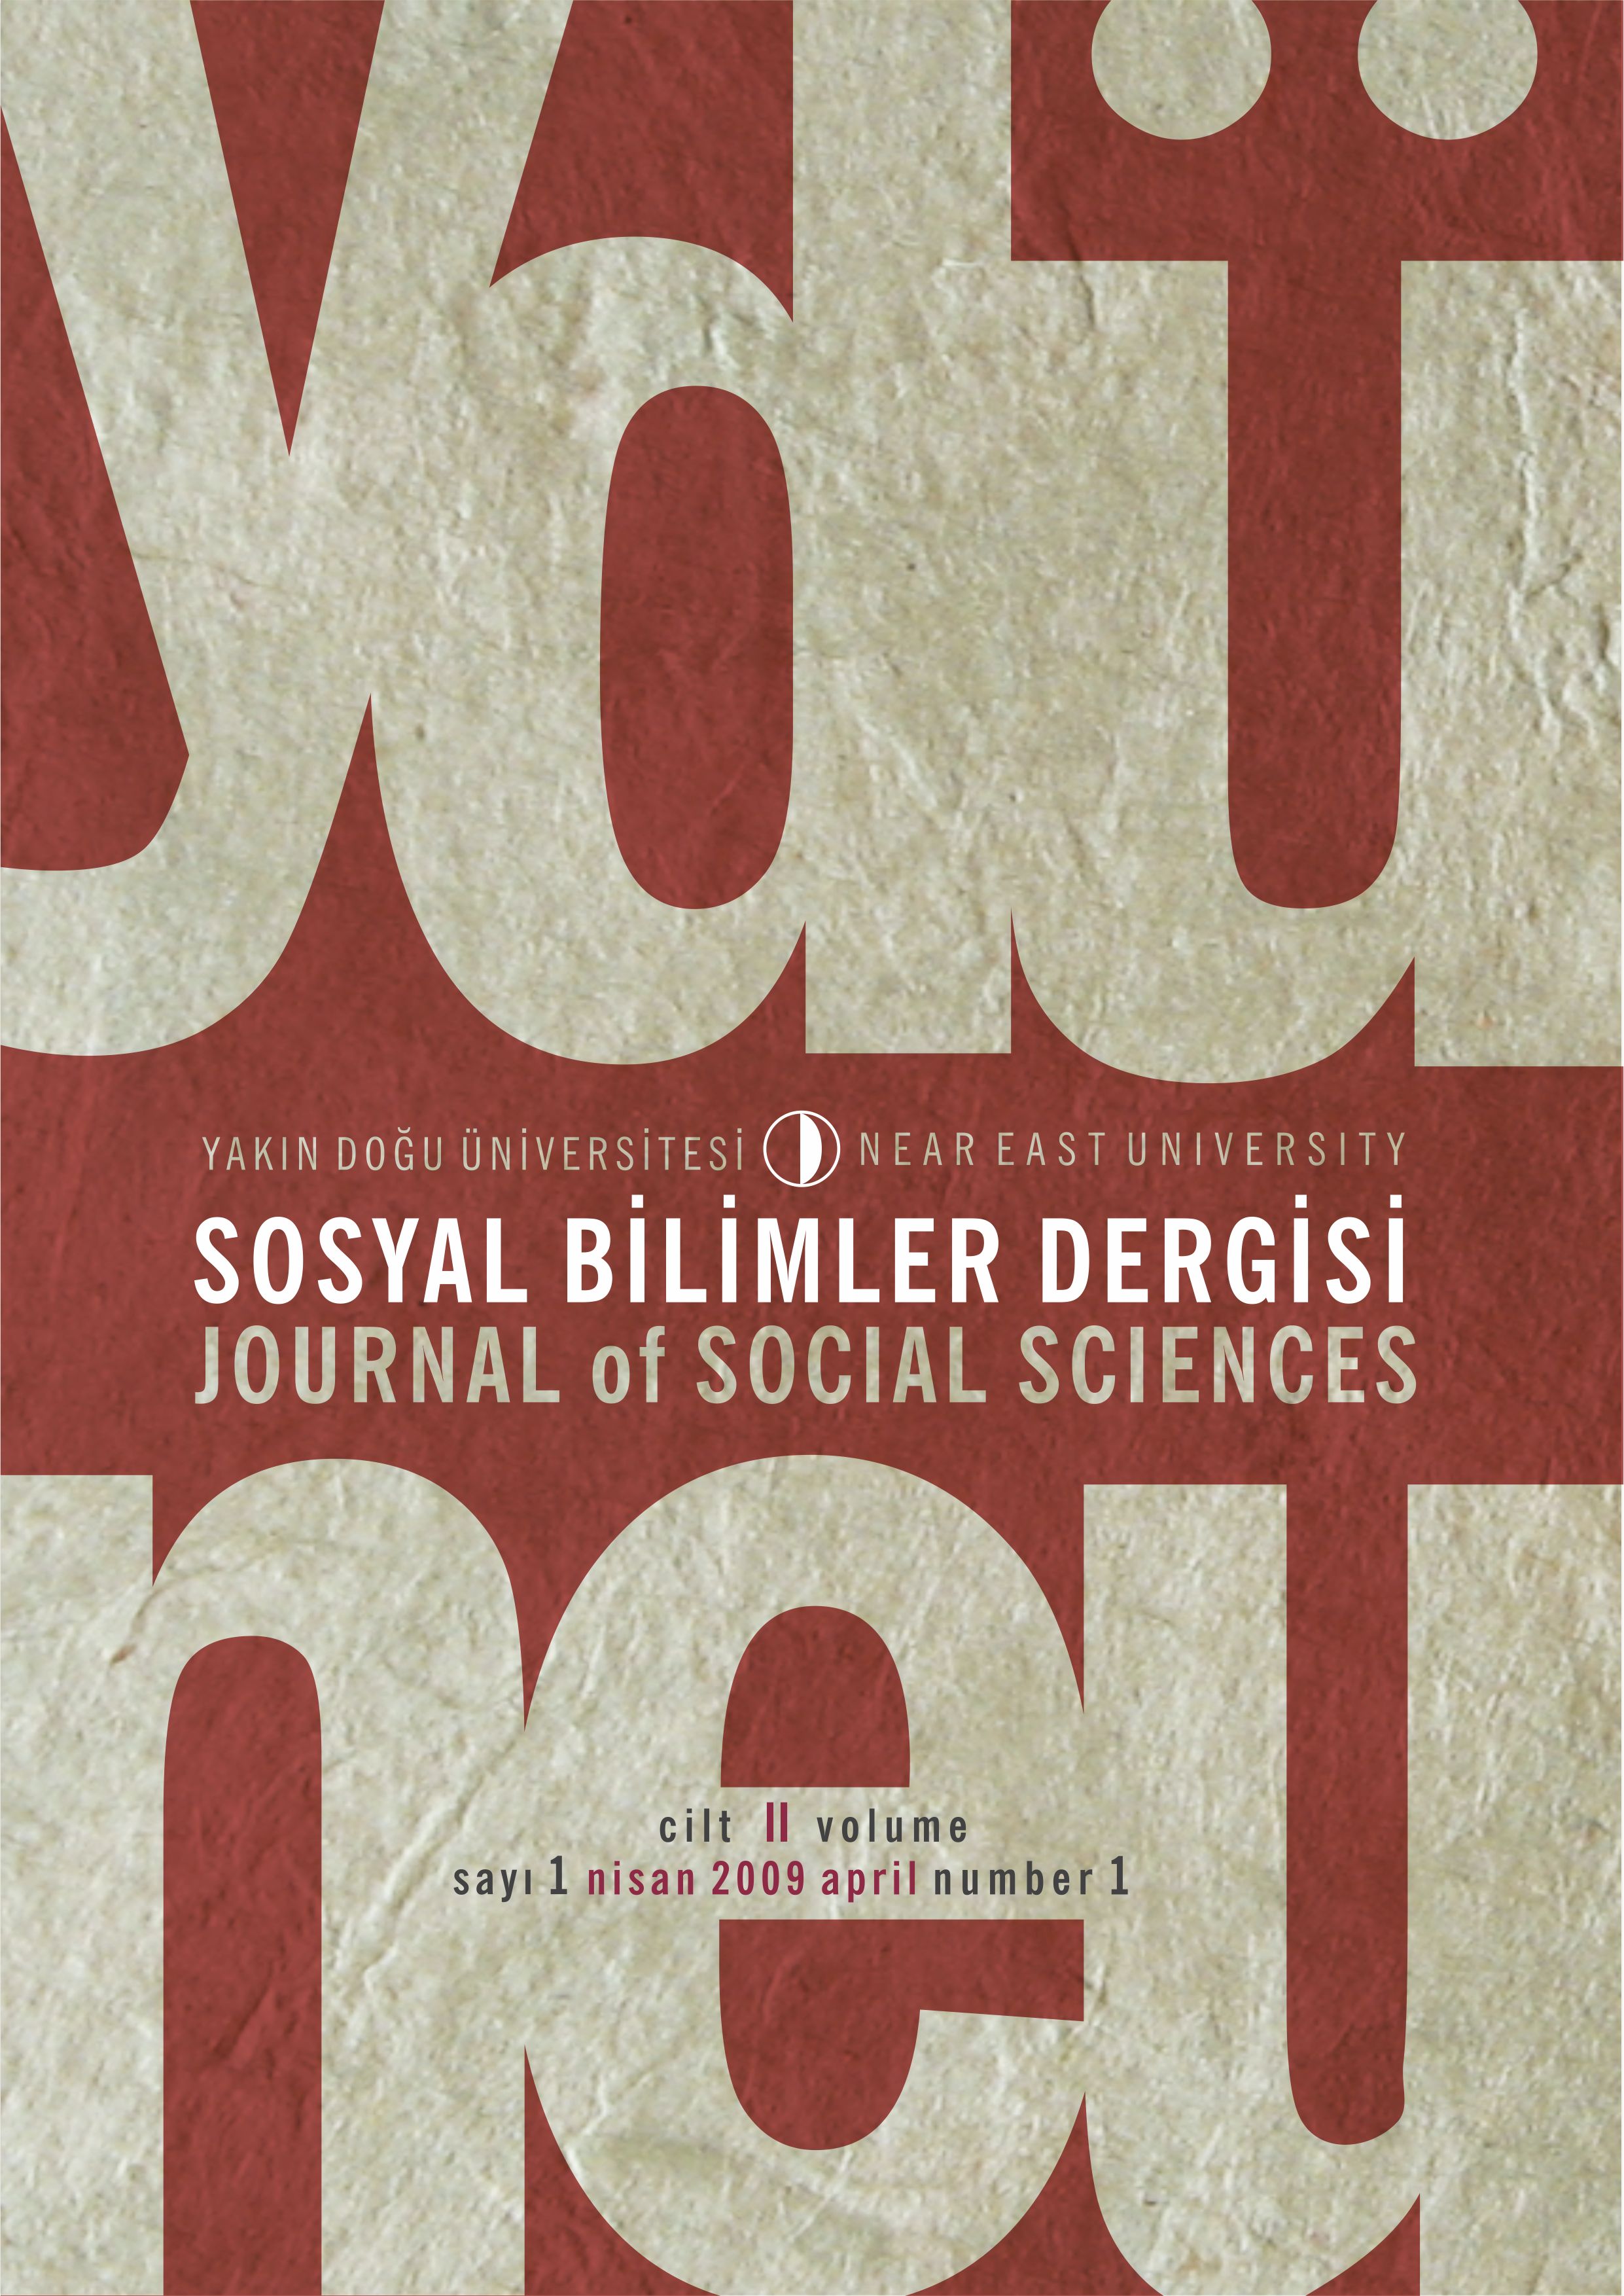 					Cilt 2 Sayı 1 (2009): Yakın Doğu Üniversitesi Sosyal Bilimler Dergisi Gör
				